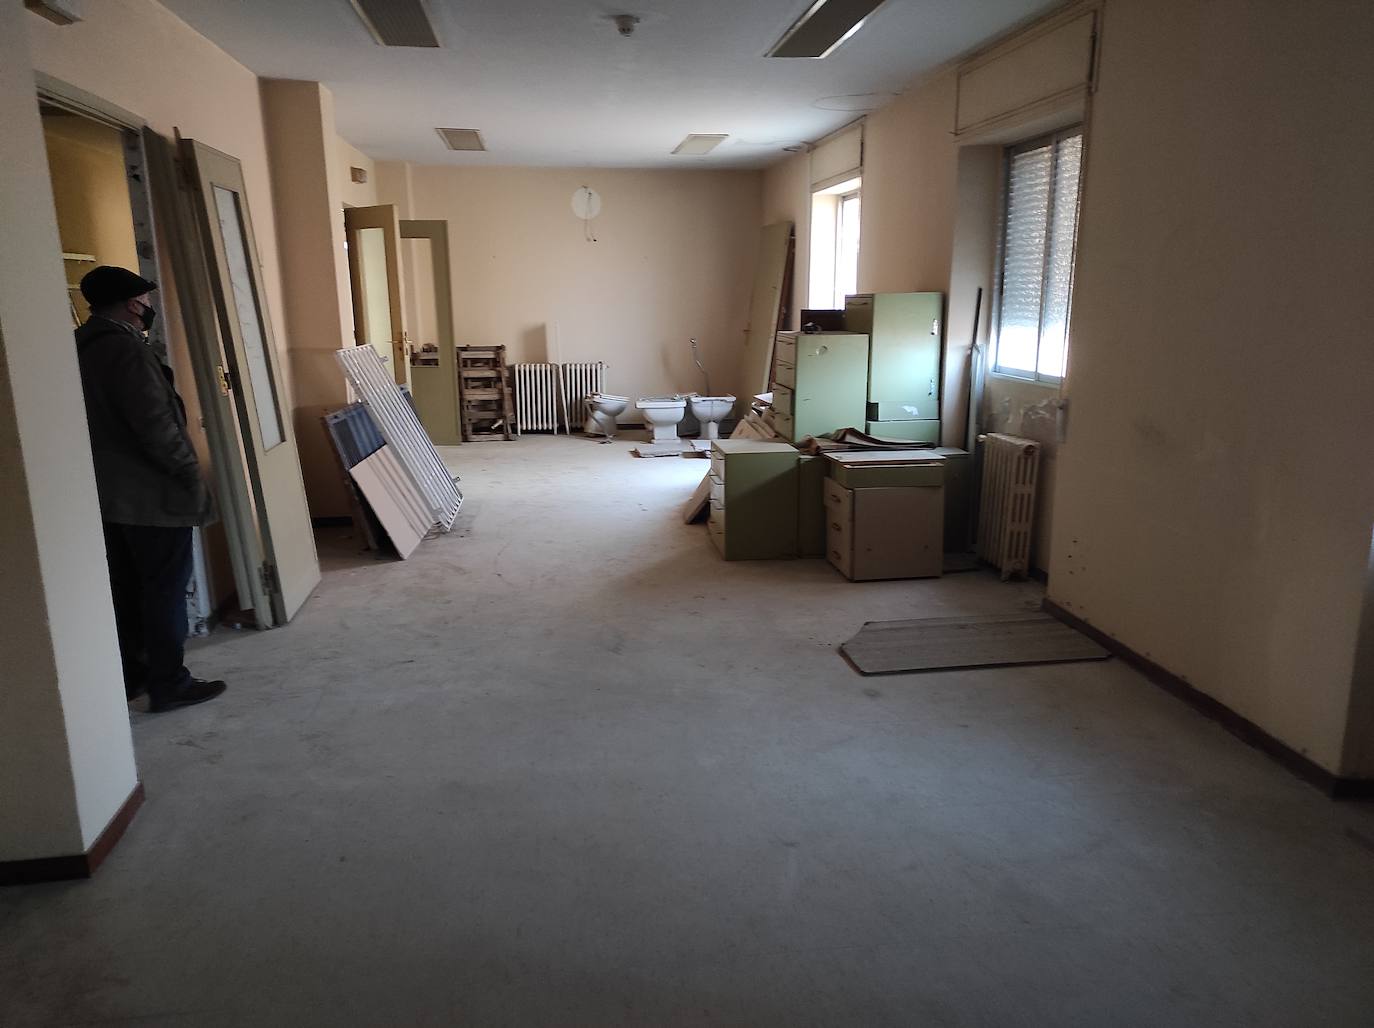 Fotos: Limpieza del edificio de la Segurida Social